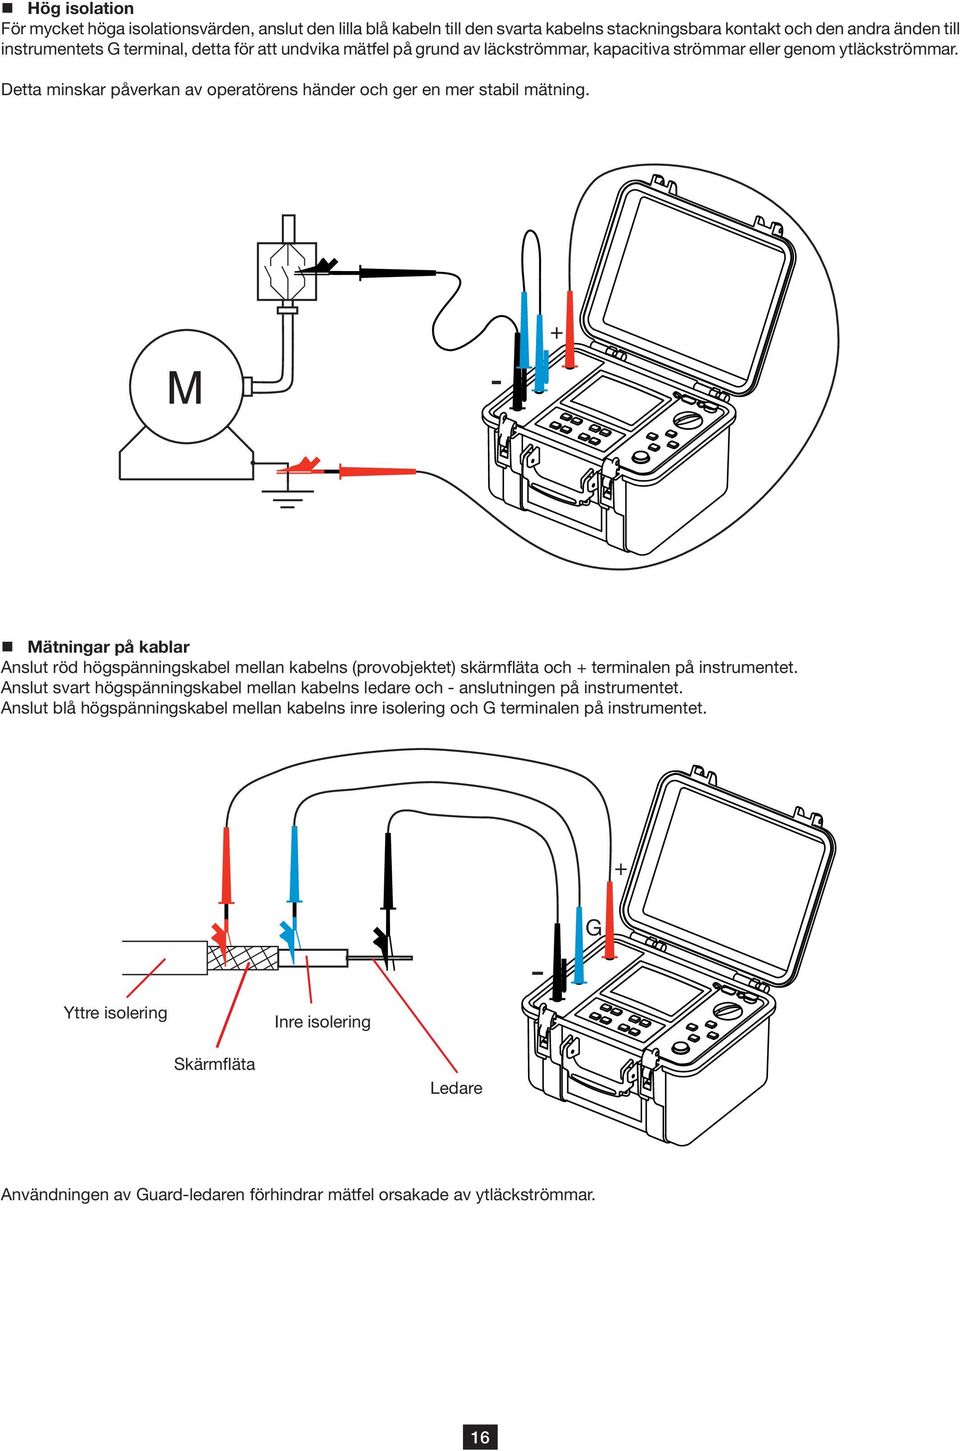 M - + Mätningar på kablar Anslut röd högspänningskabel mellan kabelns (provobjektet) skärmfläta och + terminalen på instrumentet.